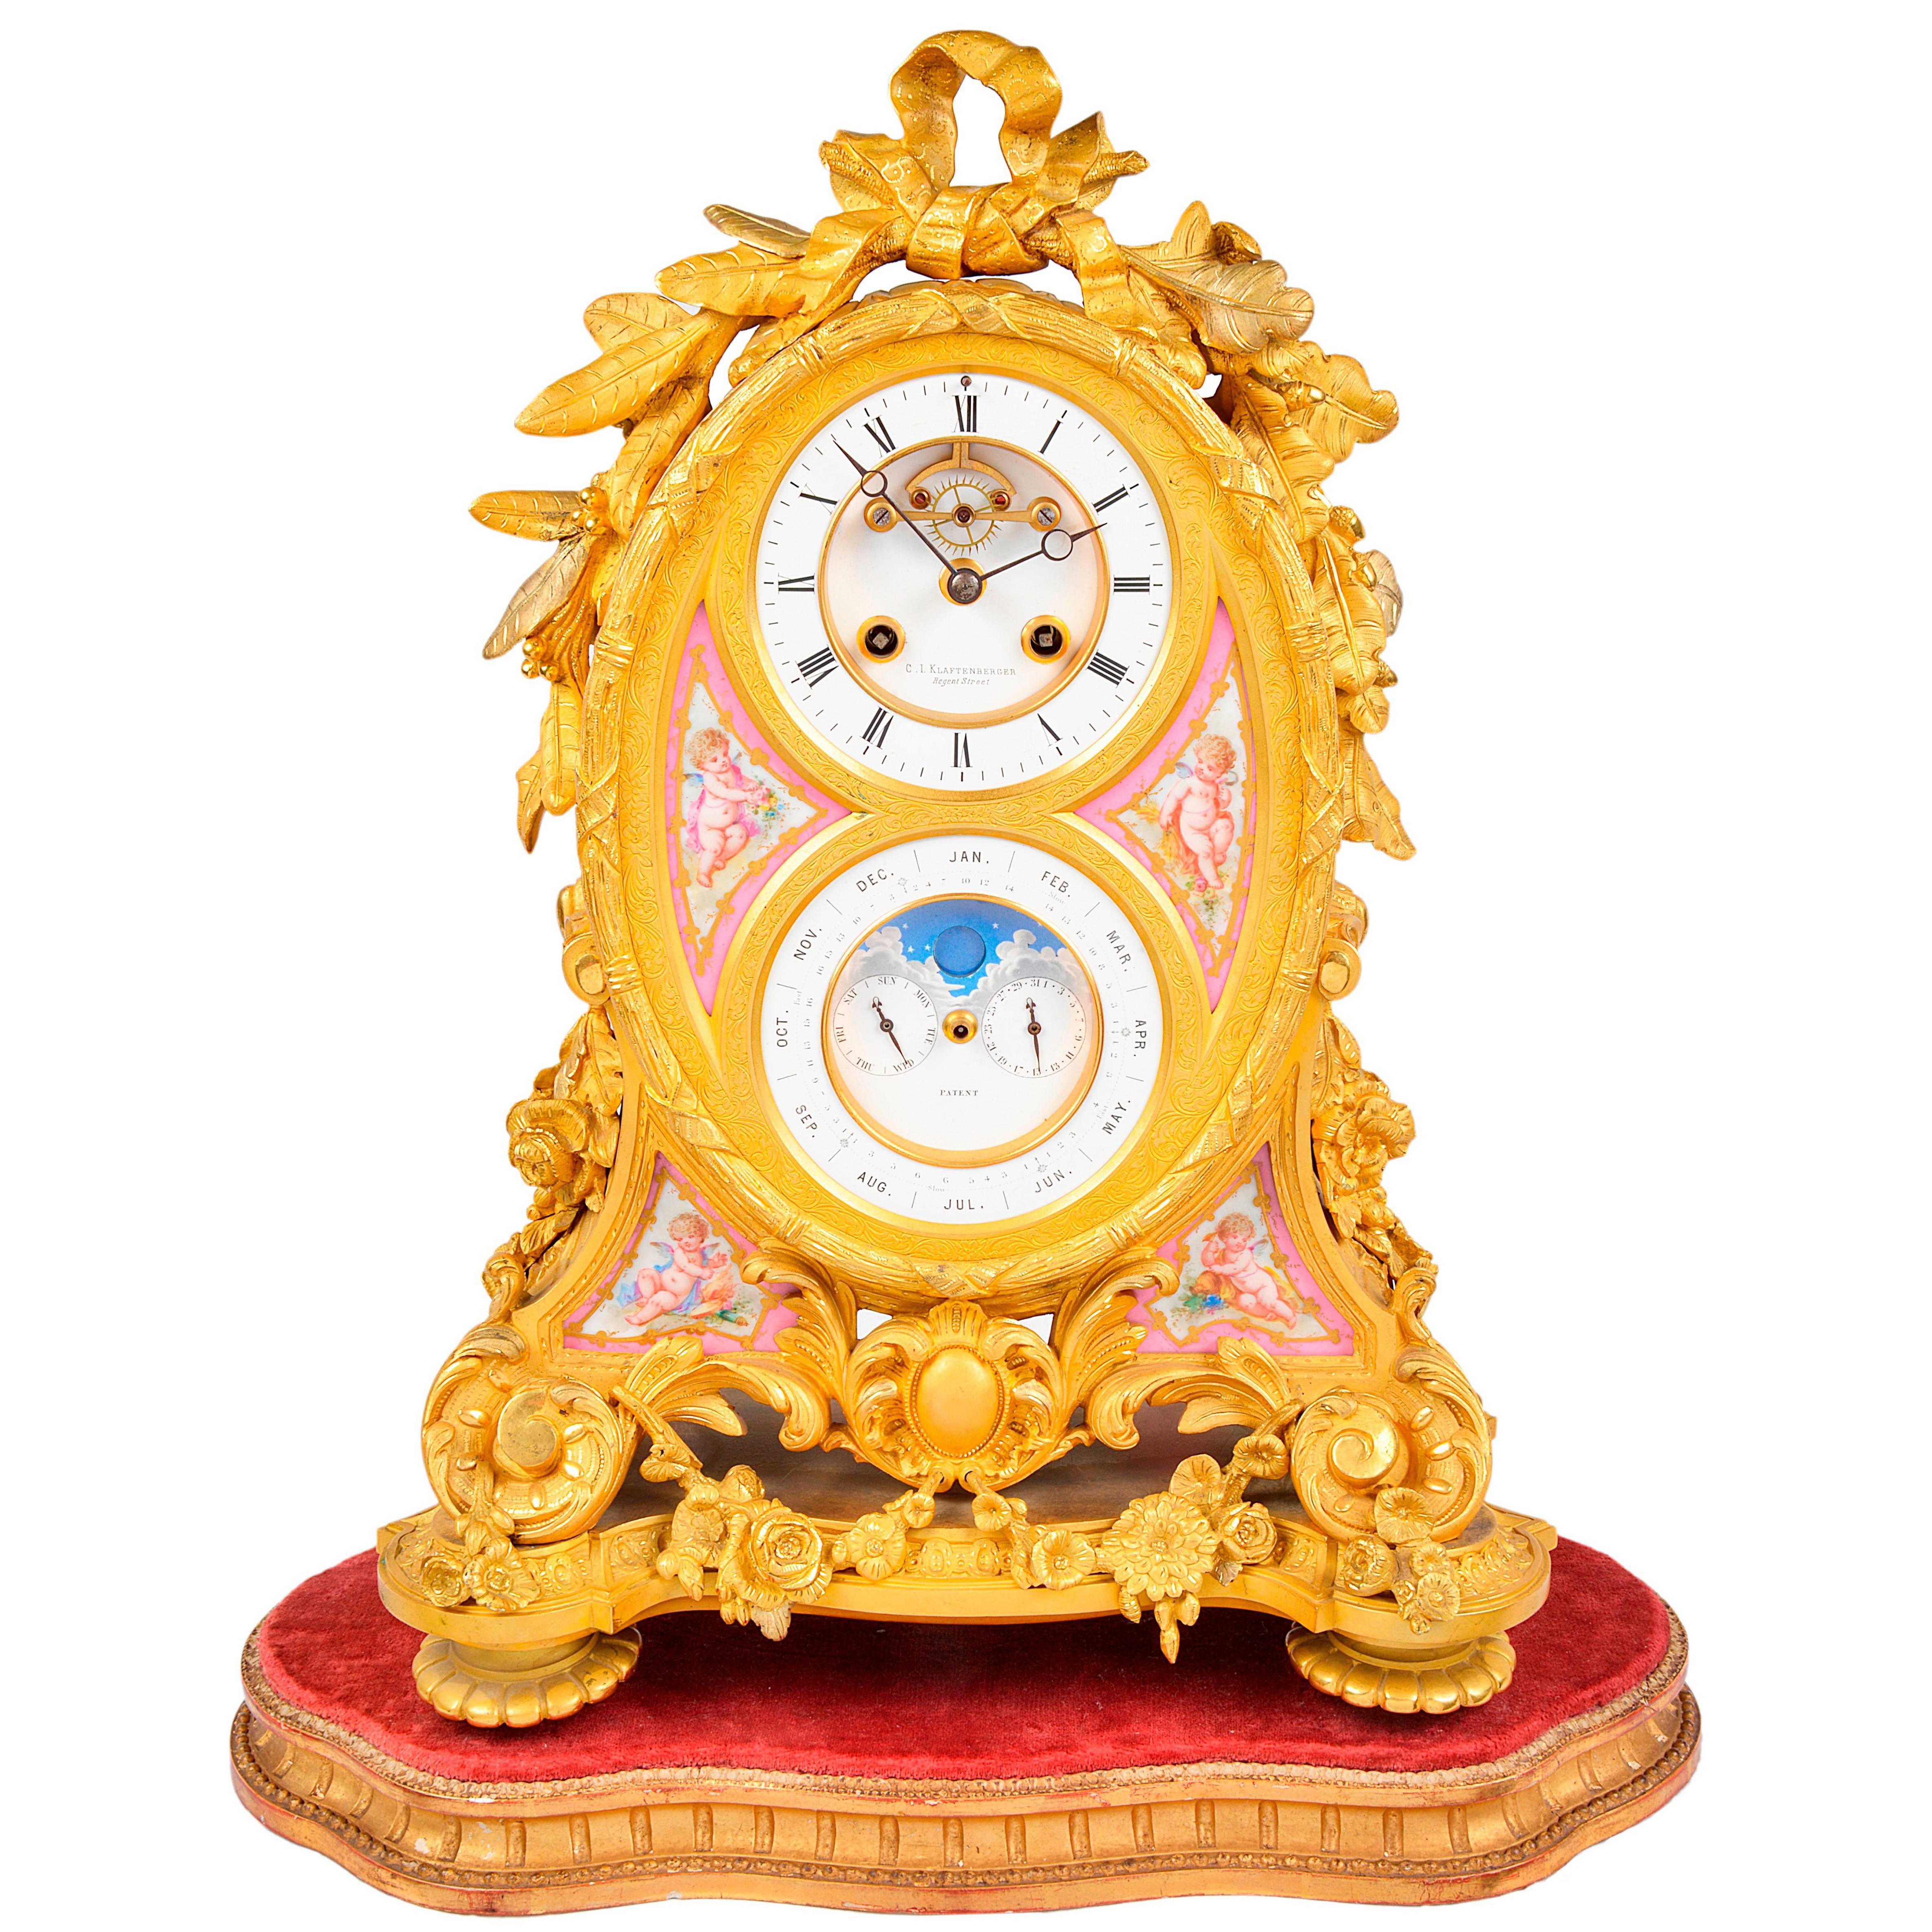 French Ormolu Calendar Mantel Clock, 19th Century